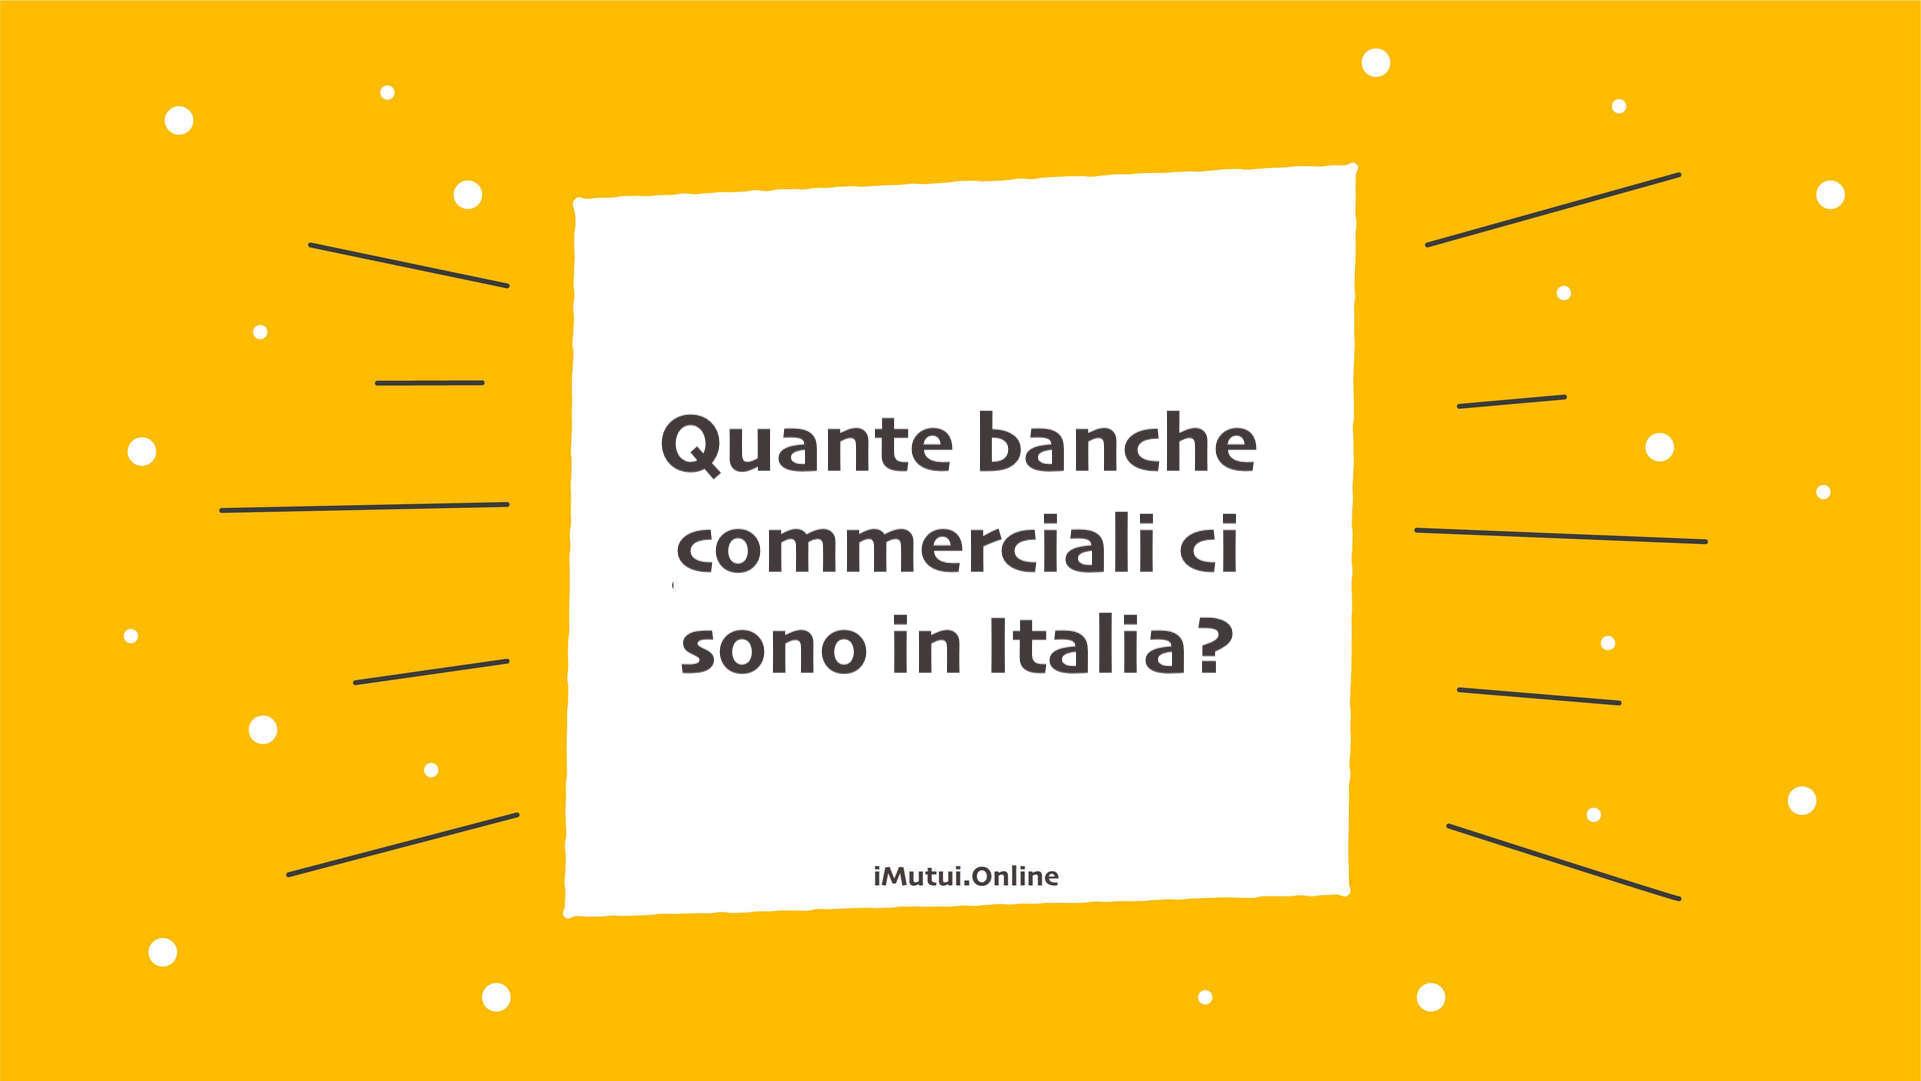 Quante banche commerciali ci sono in Italia?